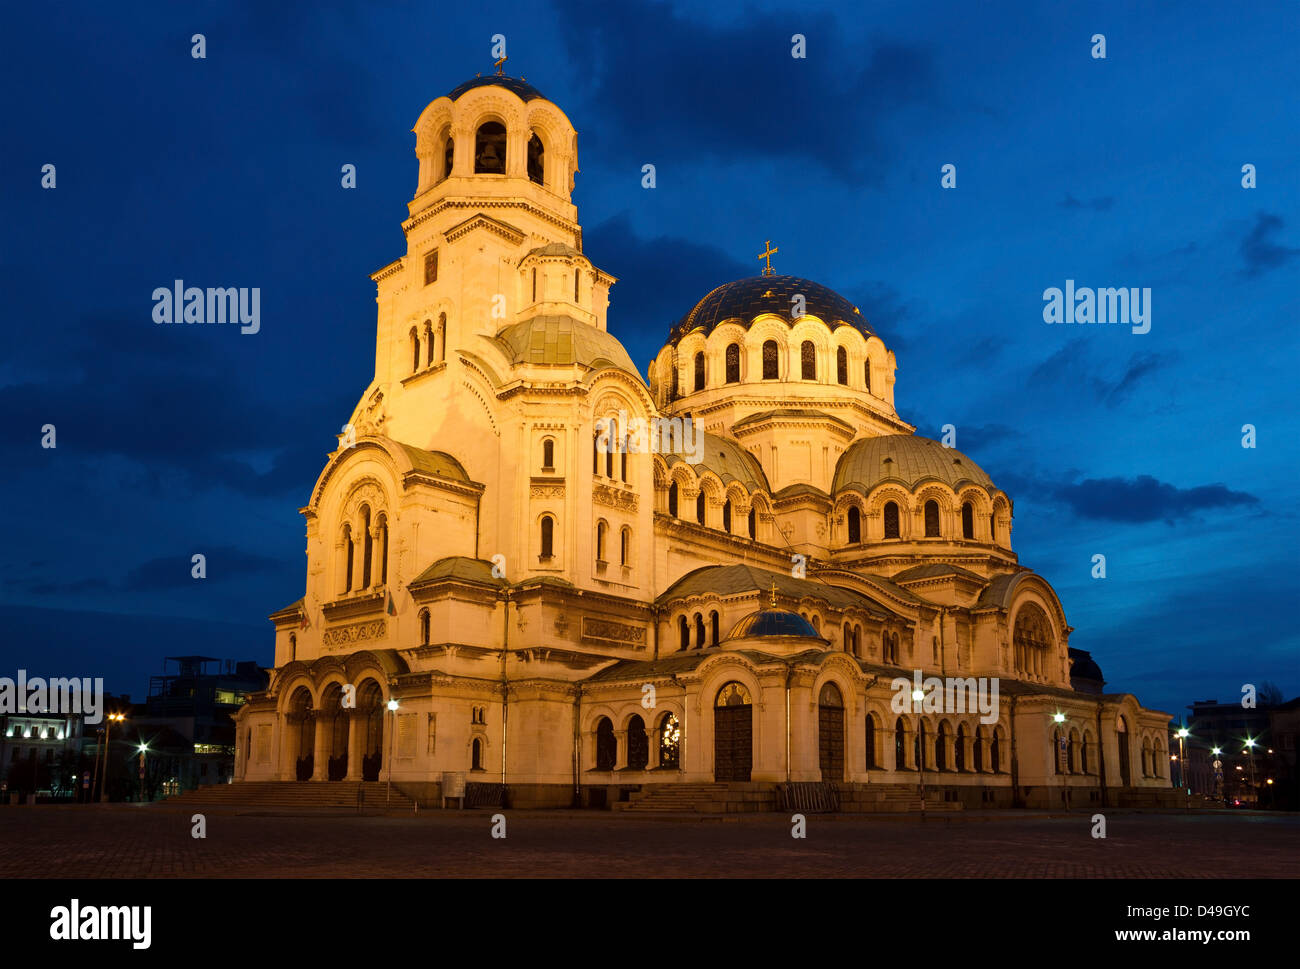 Tôt le matin, tourné de la célèbre cathédrale église Saint Alexandar Nevski à Sofia, Bulgarie juste avant le lever du soleil. Banque D'Images